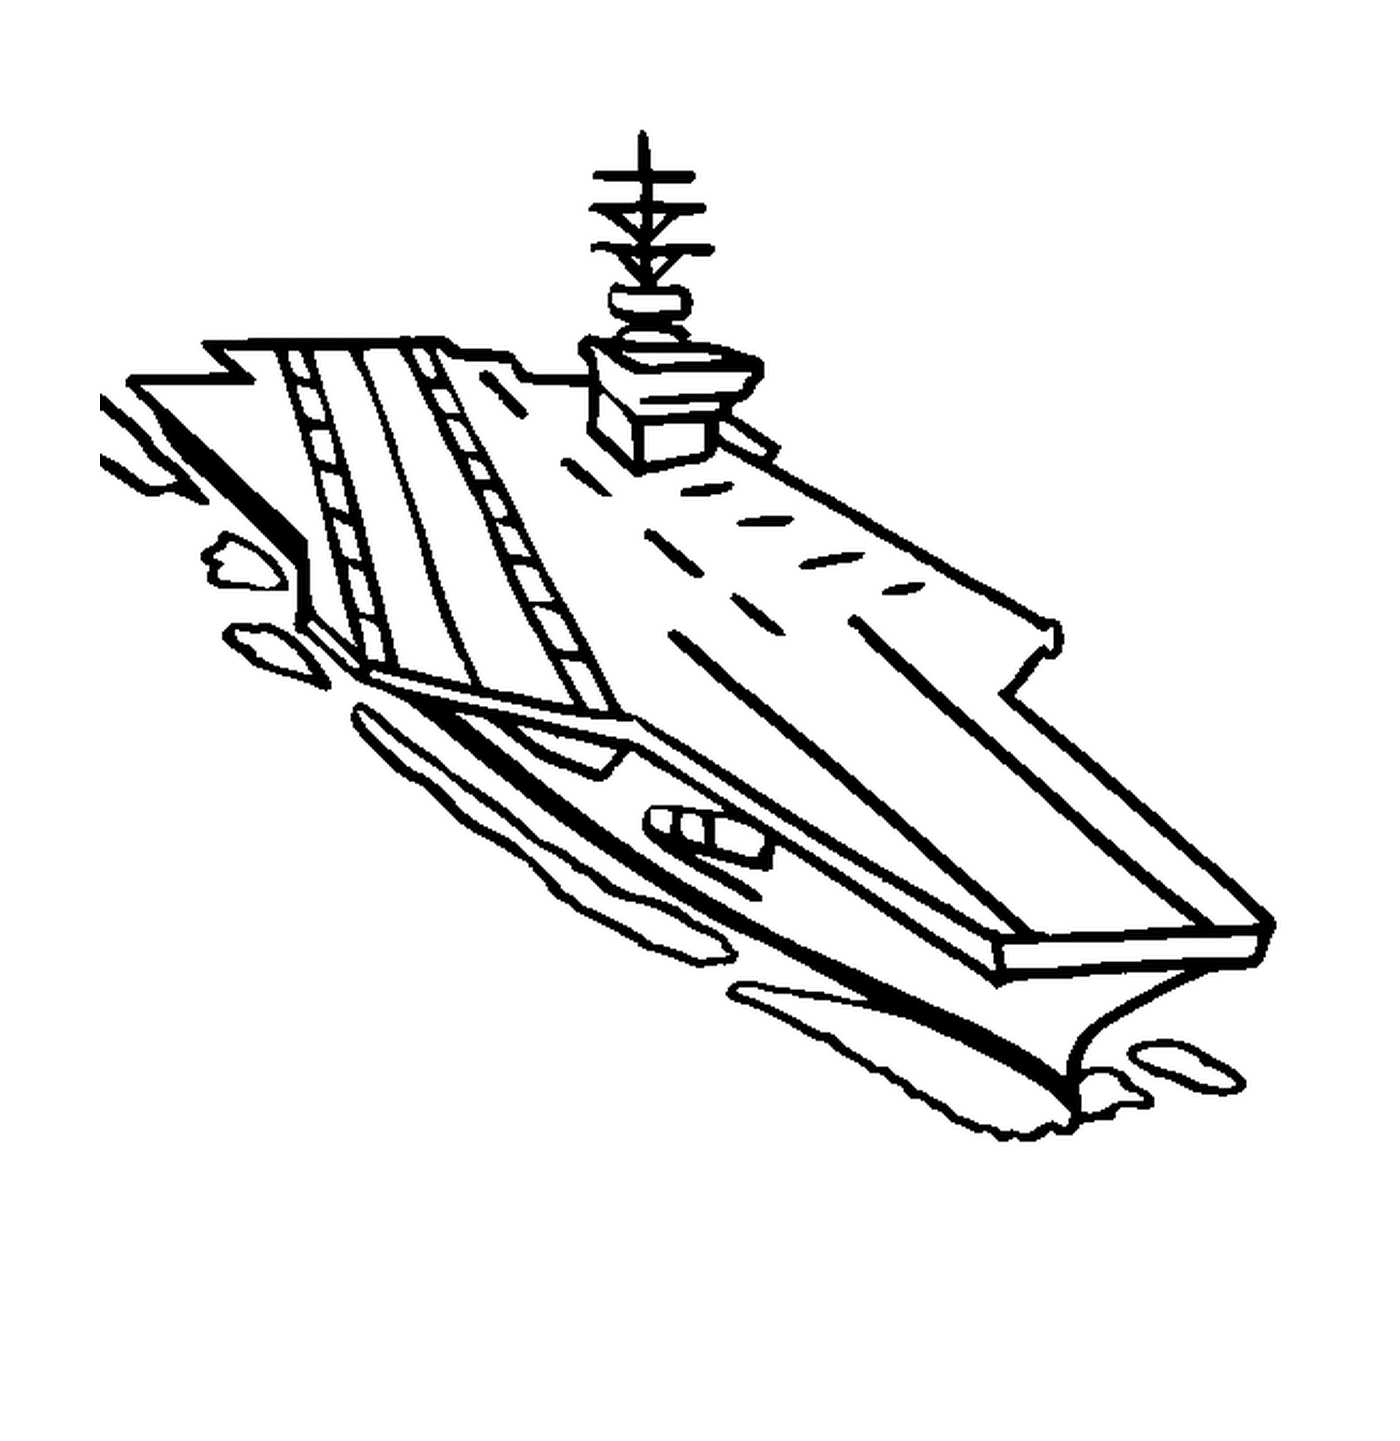  Una portaerei sull'acqua 